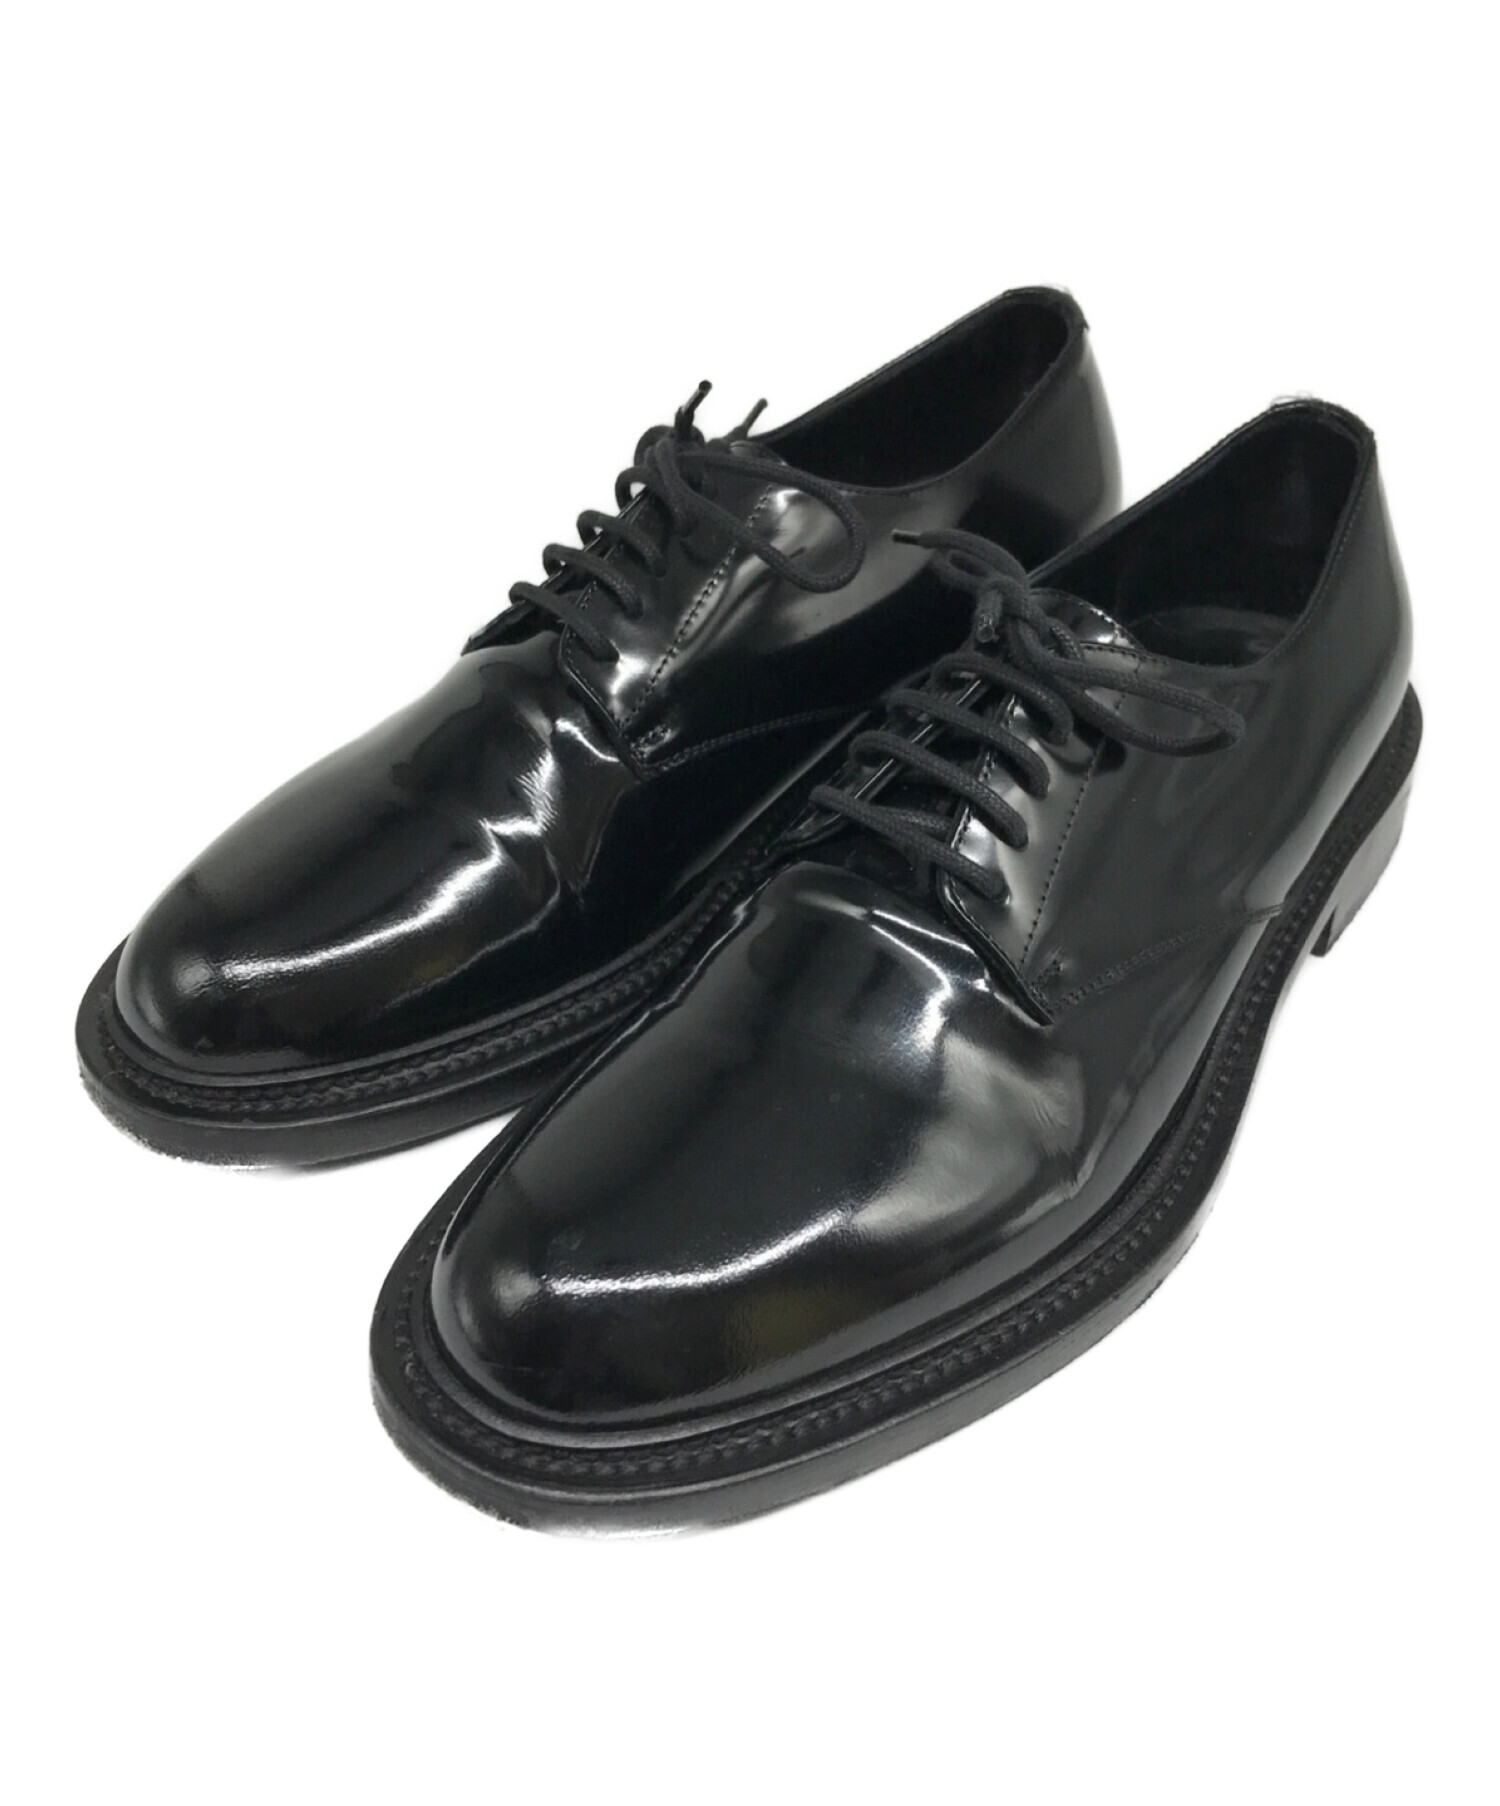 【未使用】SAINT LAURENT パテントレザー プレーントゥ 革靴 37プレーントゥ革靴レザーシューズ